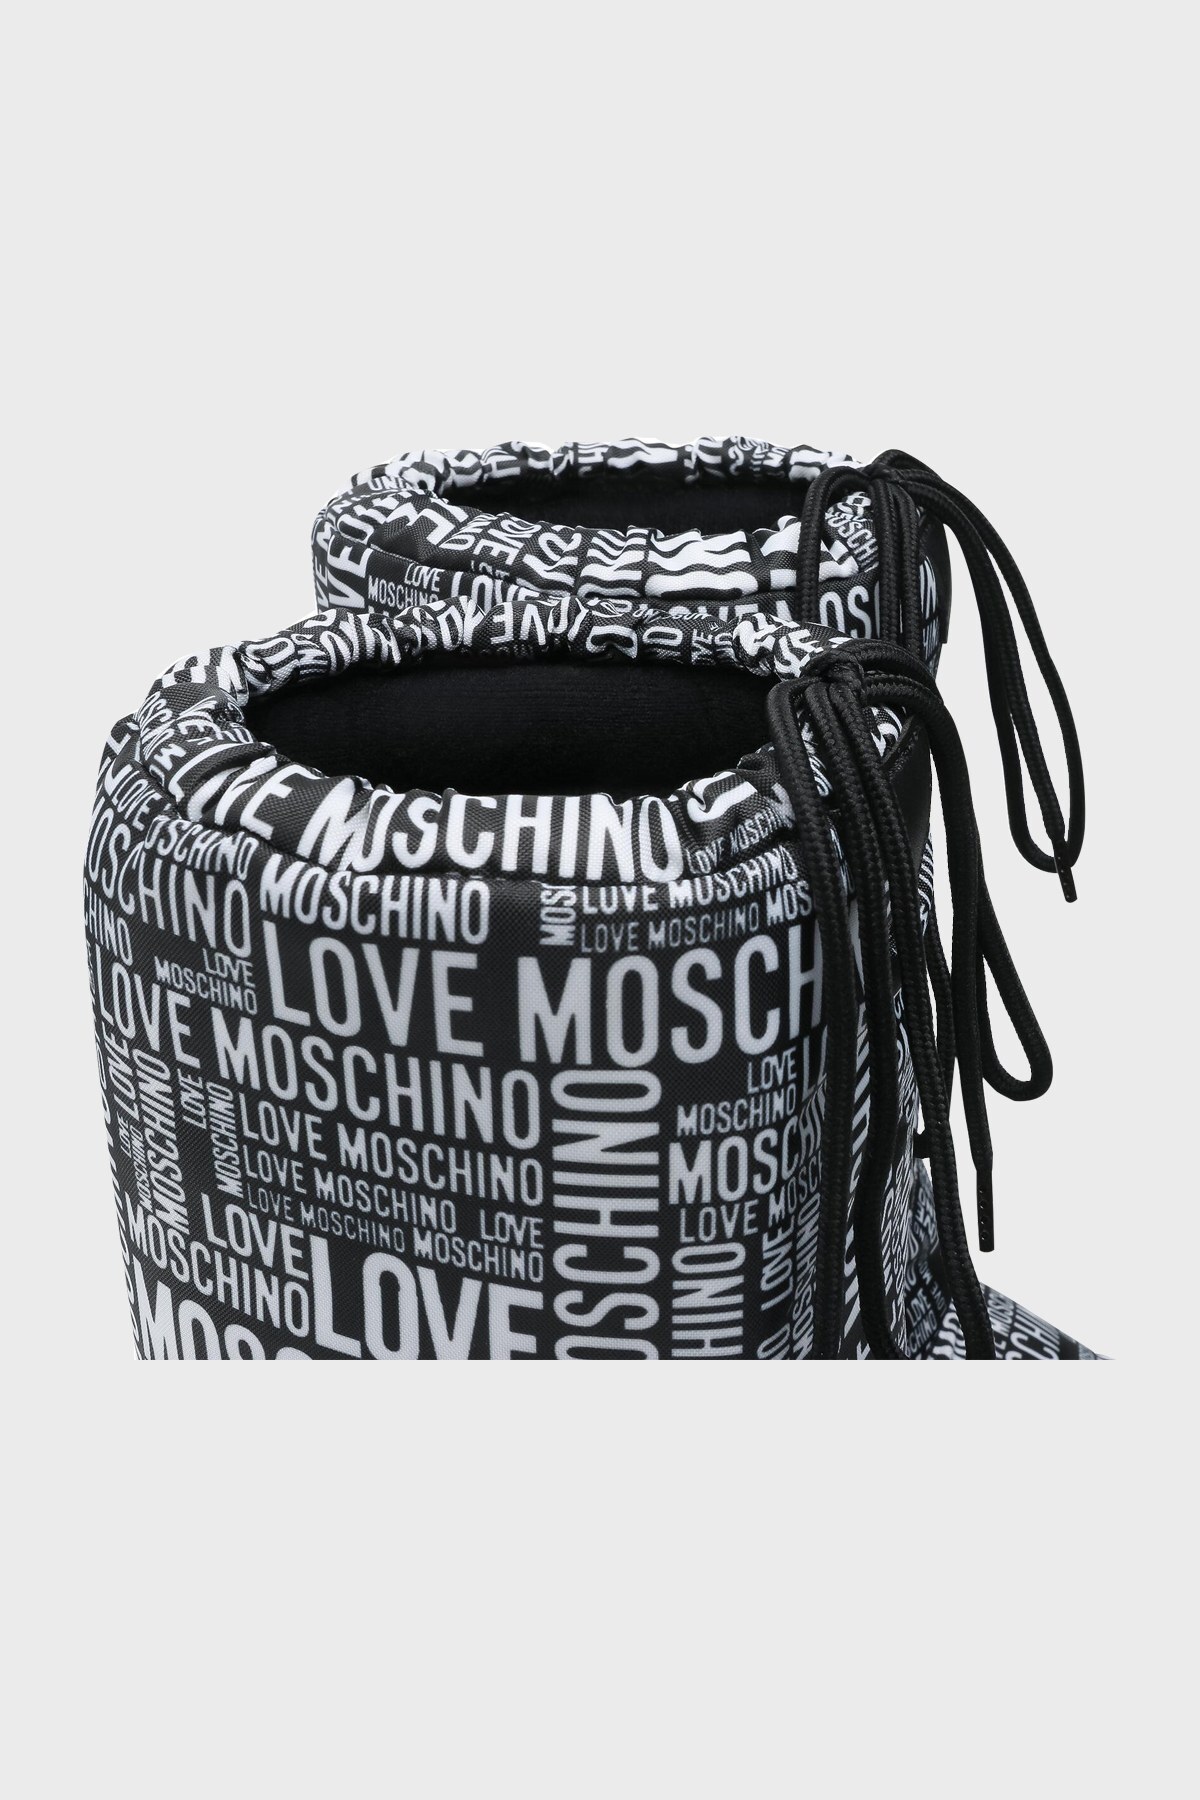 Love Moschino Logolu Bayan Kar Botu JA24012G1DISB00A SİYAH